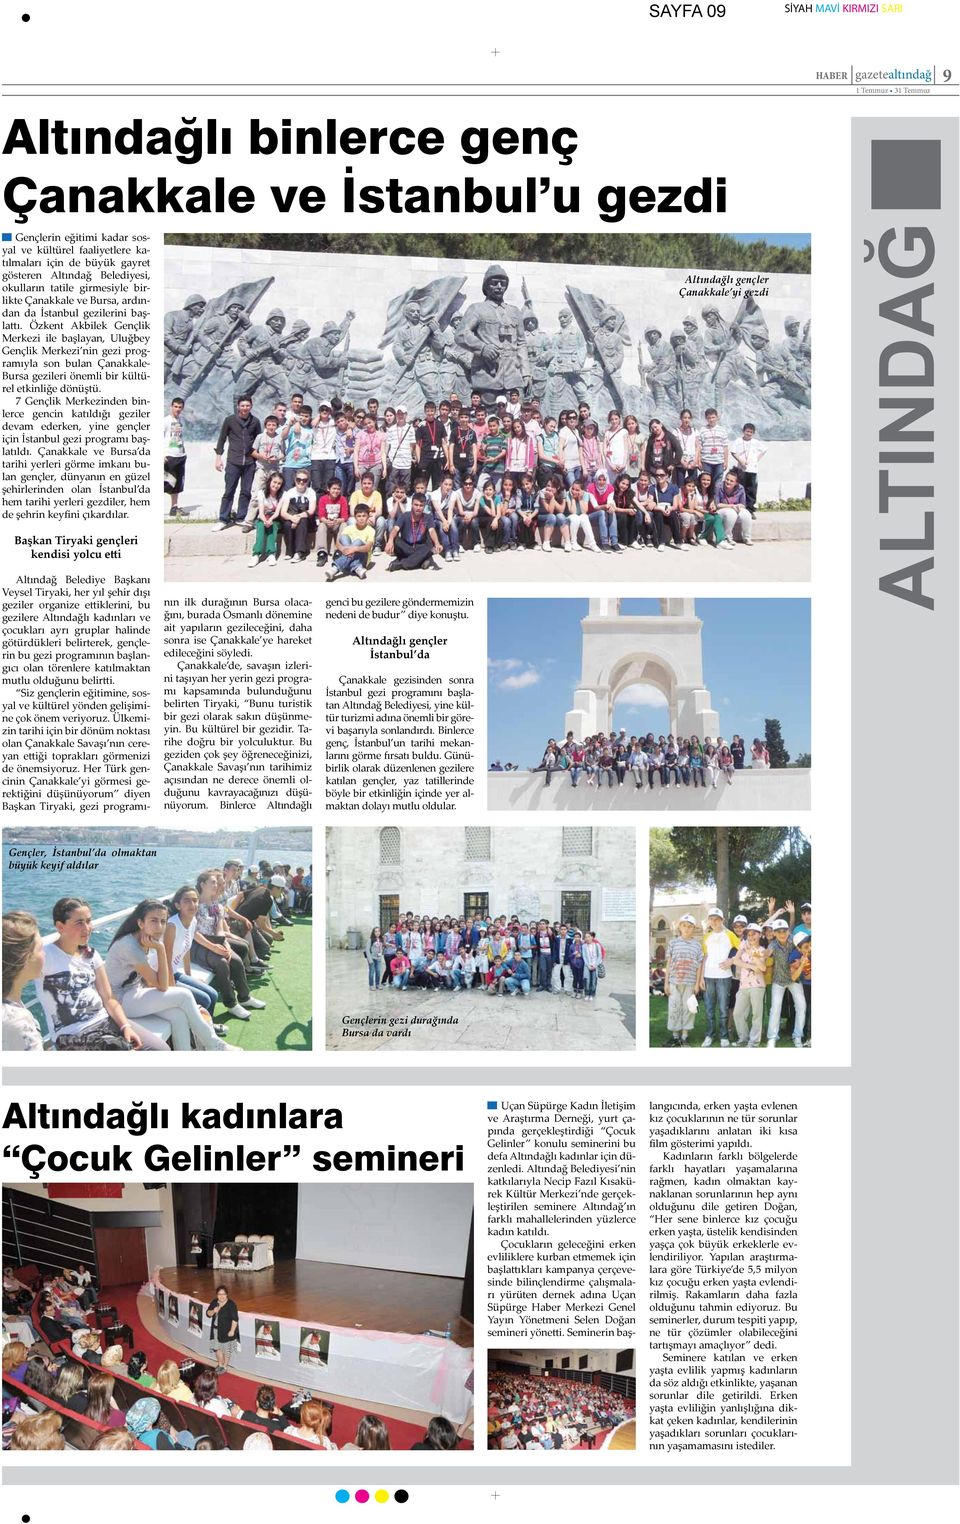 Özkent Akbilek Gençlik Merkezi ile başlayan, Uluğbey Gençlik Merkezi nin gezi programıyla son bulan Çanakkale- Bursa gezileri önemli bir kültürel etkinliğe dönüştü.